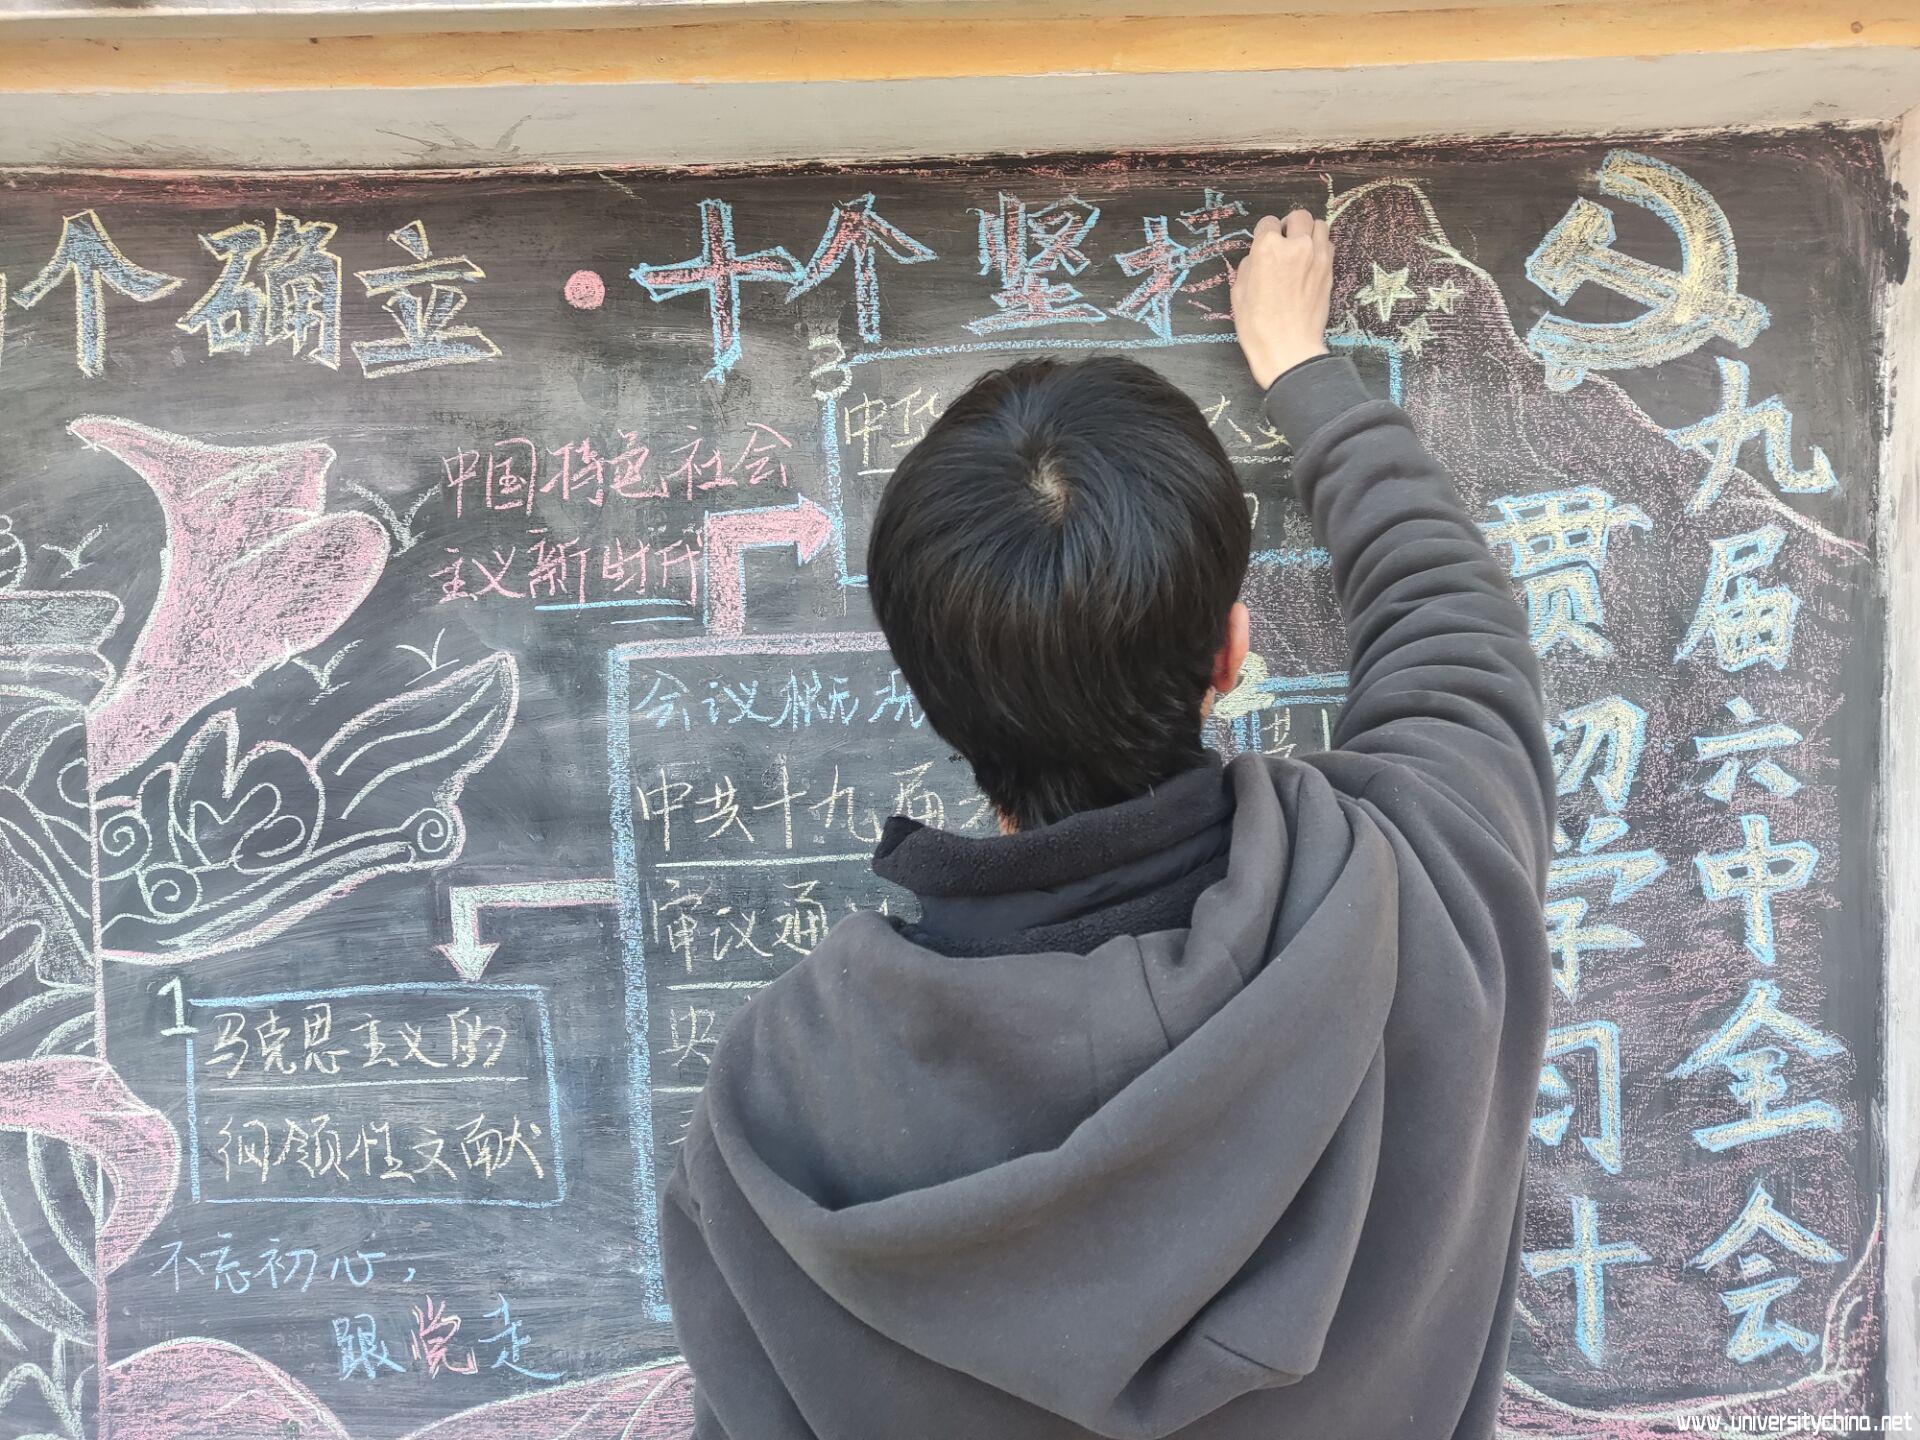 村助林莆昂正在绘制黑板报.jpg